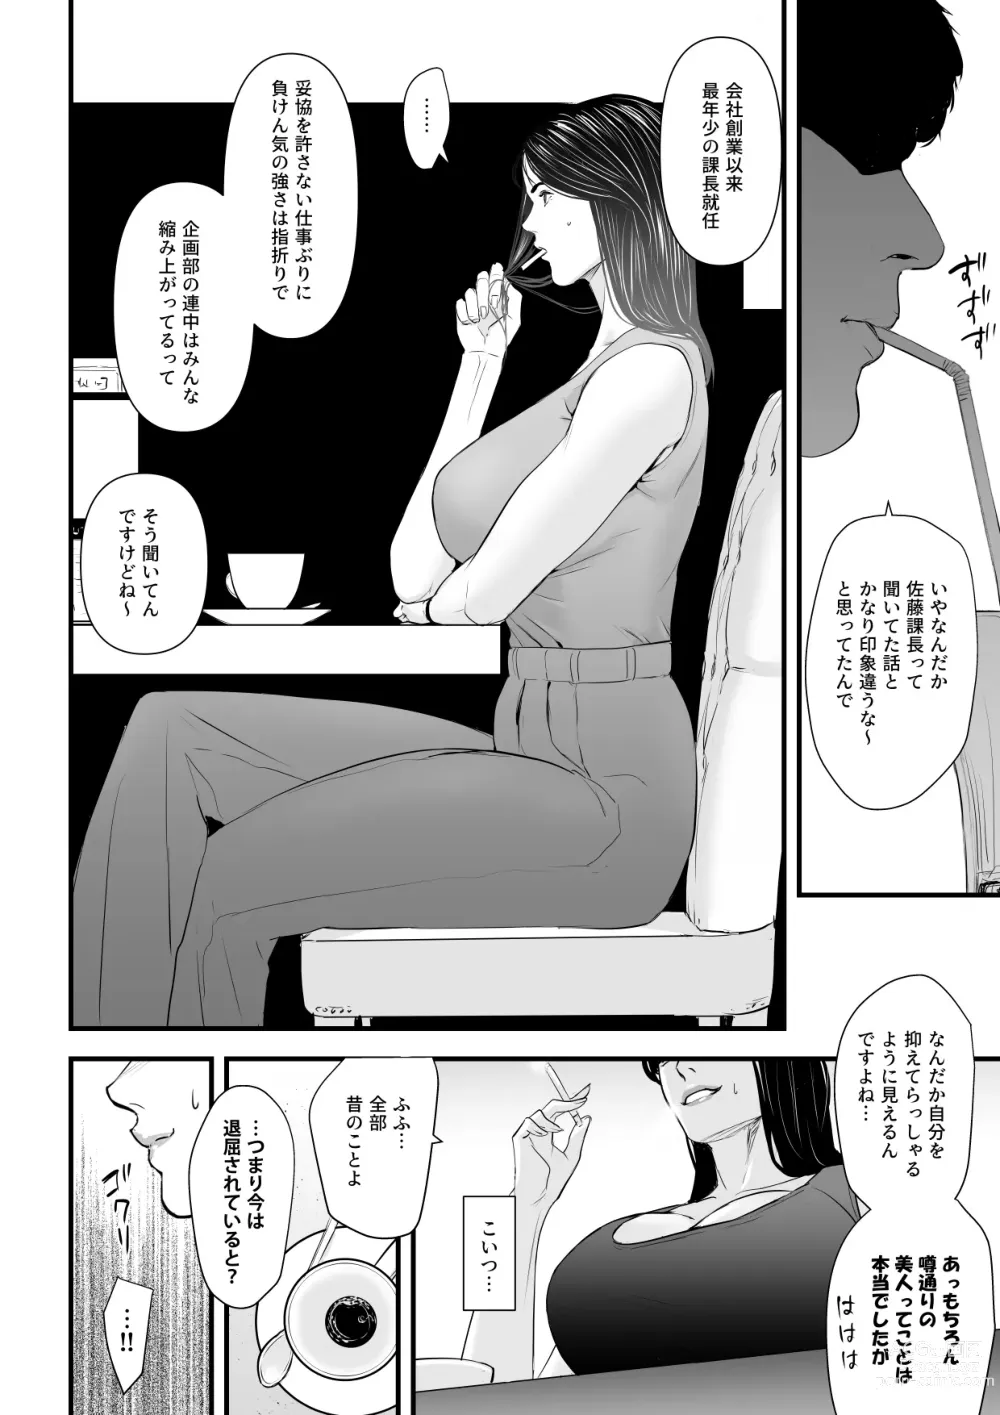 Page 9 of doujinshi Erito onnakachouwa kukkbokusaseraretai